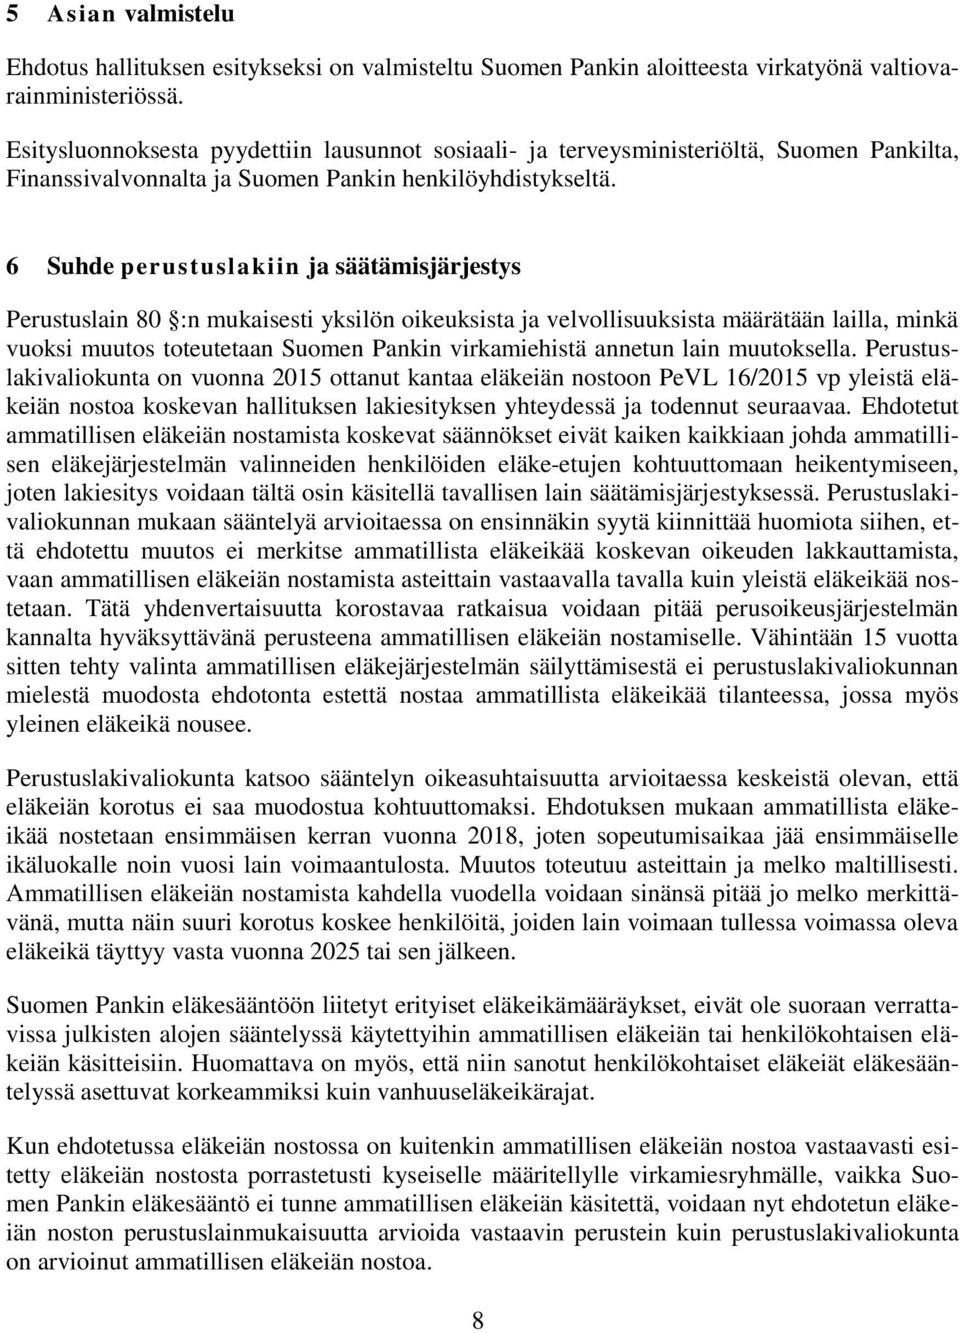 6 Suhde perustuslakiin ja säätämisjärjestys Perustuslain 80 :n mukaisesti yksilön oikeuksista ja velvollisuuksista määrätään lailla, minkä vuoksi muutos toteutetaan Suomen Pankin virkamiehistä